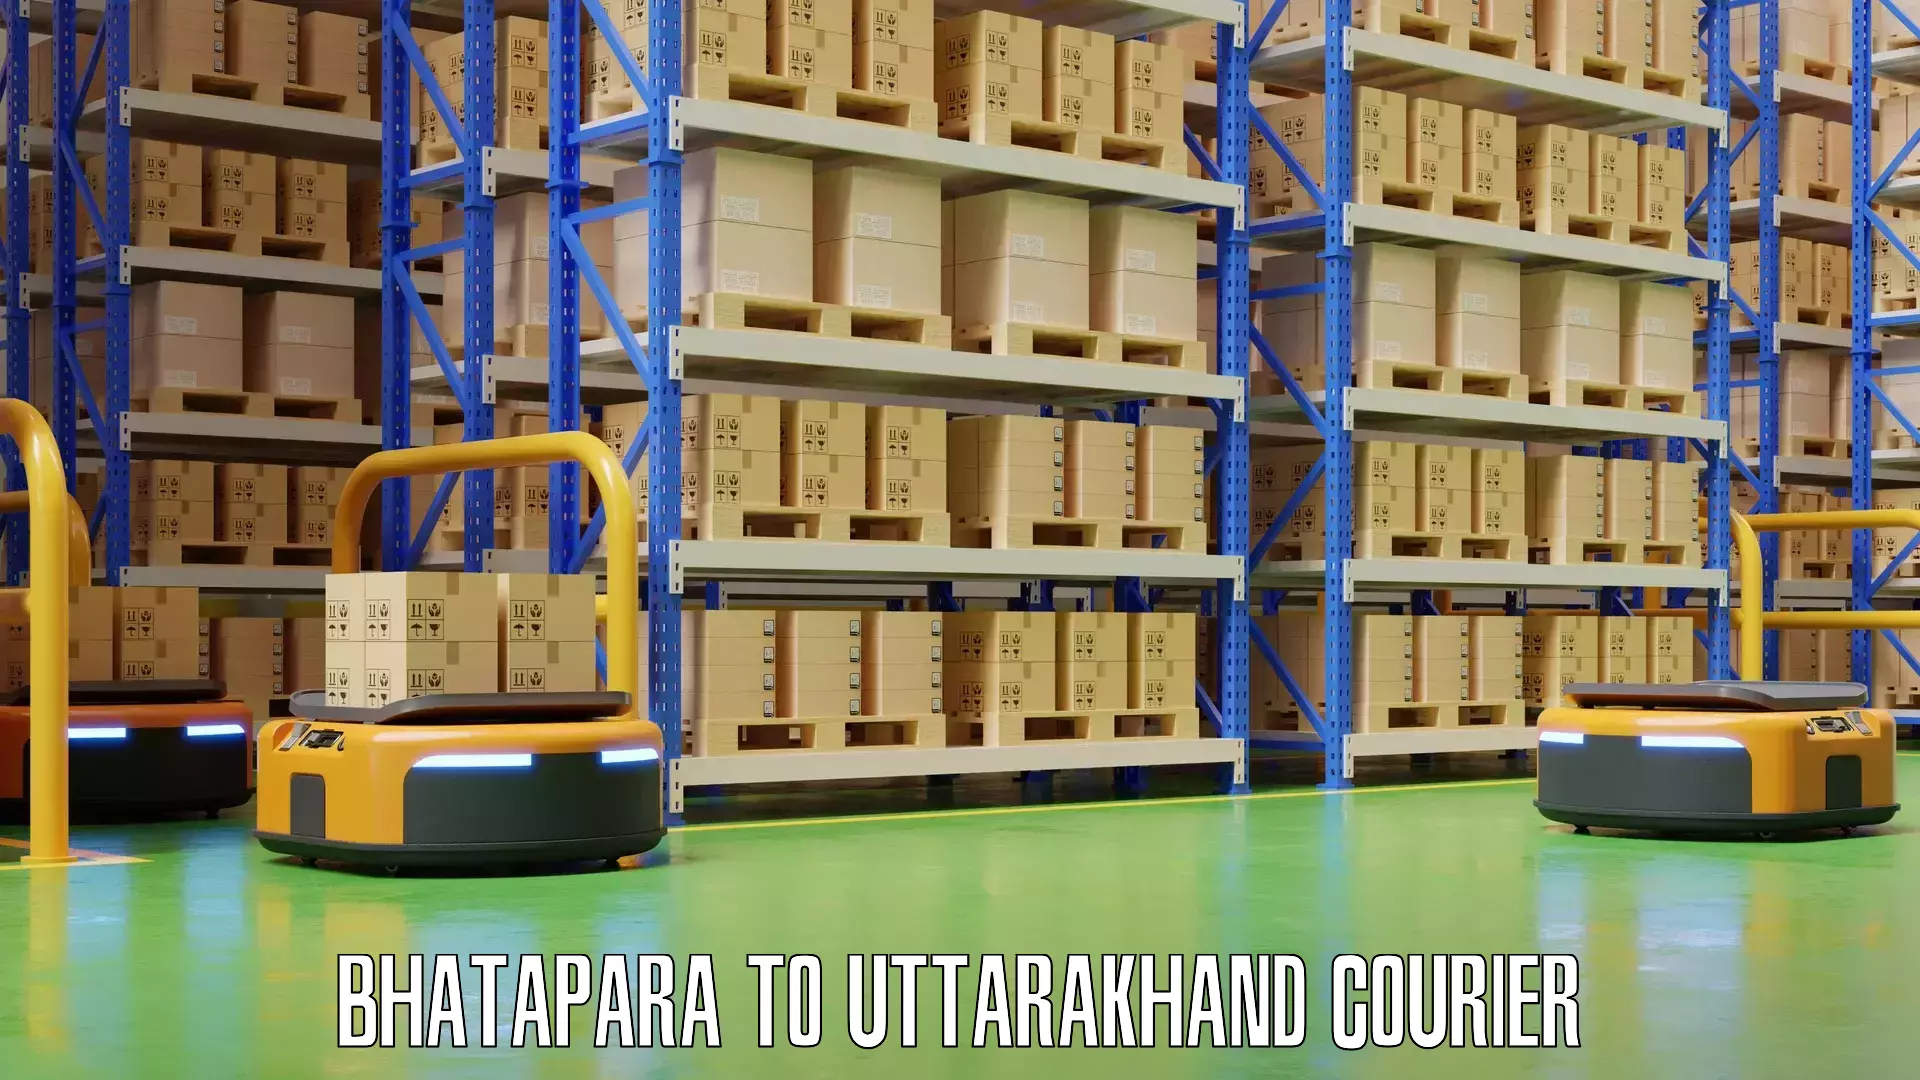 Baggage shipping experts Bhatapara to Uttarakhand